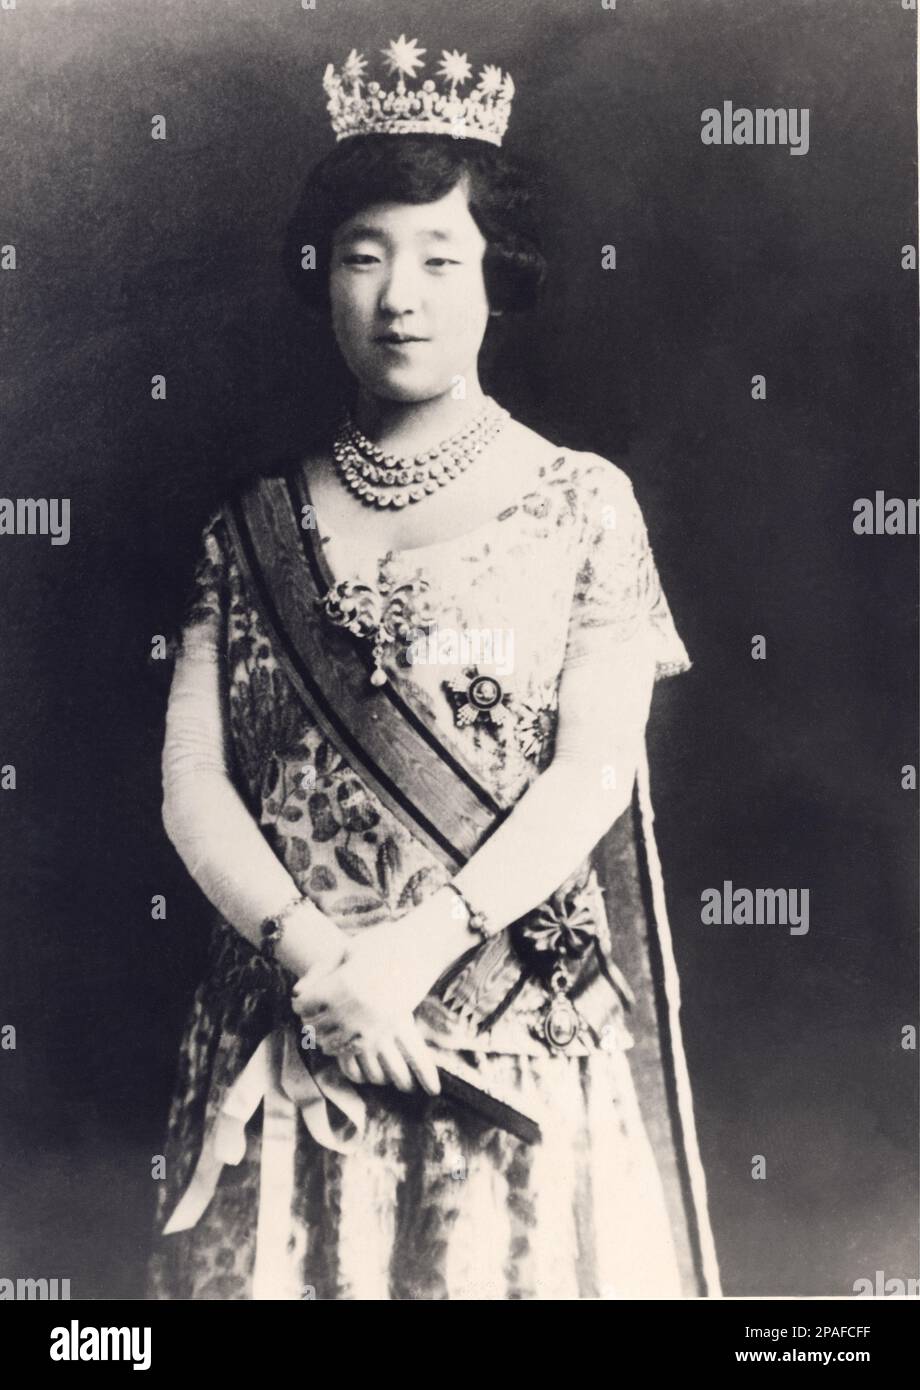 1925 , 25 dicembre , Tokyo , Giappone : l'imperatrice del Giappone KOJUN ( principessa NAGAKO KUNI , 1903 - 2000 ) il giorno dell'incoronazione con i gioielli della Corona giapponese . Fu consorte del lontano cugino imperatore Showa ( HIROHITO , 1901 - 1989 ) dal 1924 , e madre dell'attuale imperatore Akihito ( nato nel 1933 ) . Nagako era la figlia maggiore del principe Kuni Kuniyoshi , una discendenza della famiglia imperiale, sua madre discendeva da Daimyo, l'aristocrazia feudale o militare . La coppia imperiale ebbe sette figli, cinque figlie e due figli . - GIAPPONE - NOBILTÀ - NOBILI - N Foto Stock